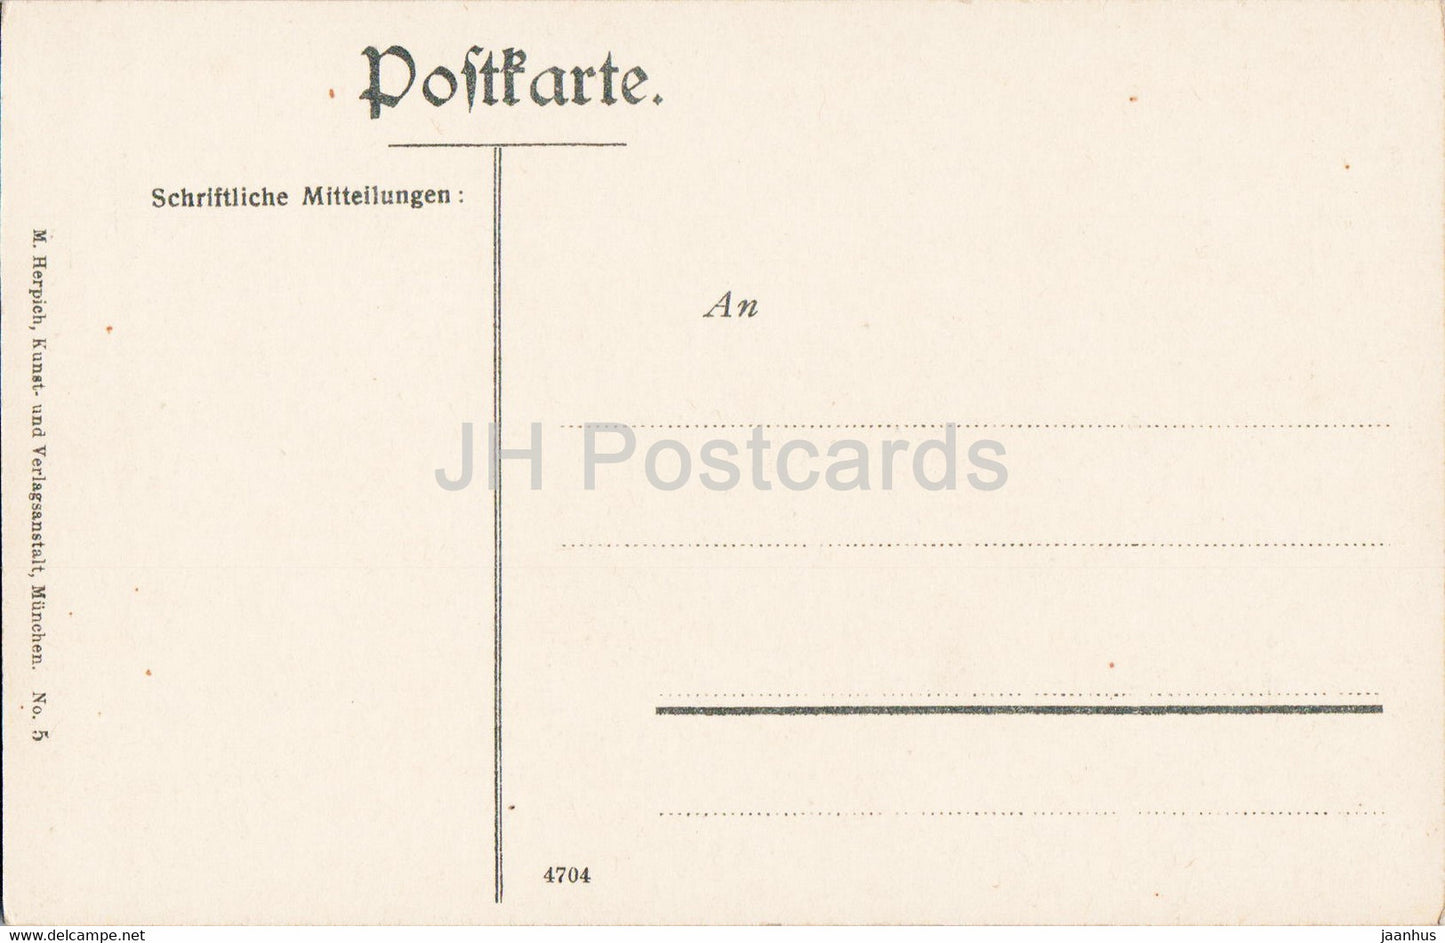 Munchen - Kgl Hoftheater - théâtre - tram - 5 - carte postale ancienne - 1906 - Allemagne - inutilisé